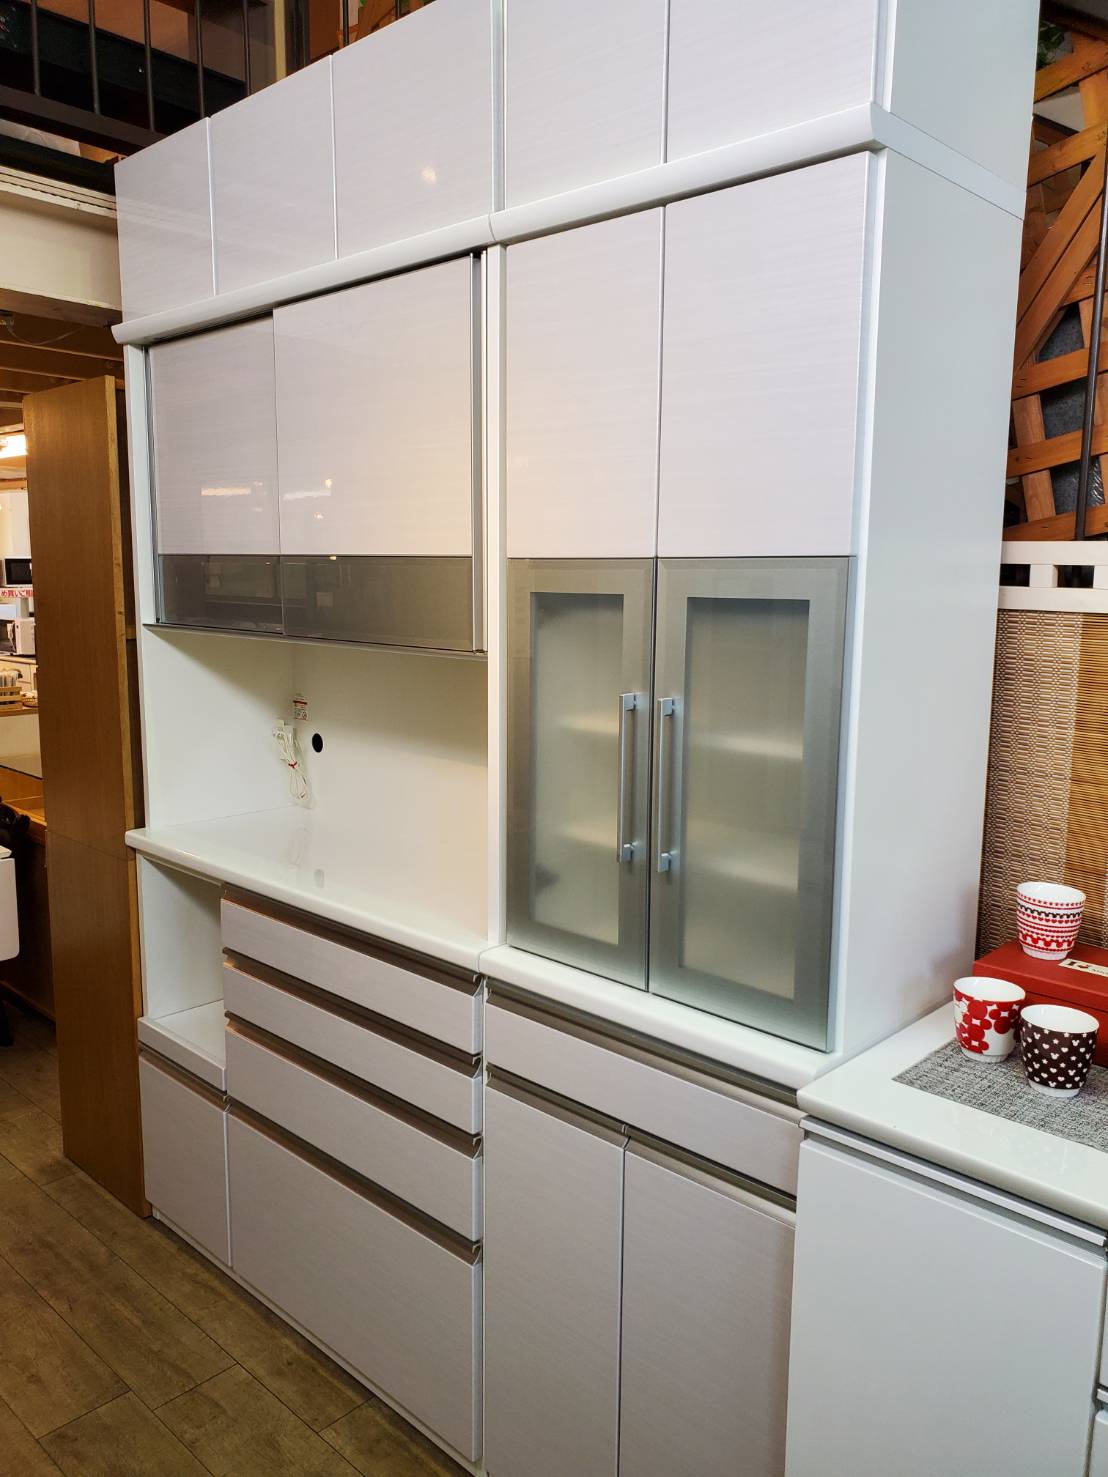 ☆松田家具 レンジボード 食器棚セット モイス ホワイト系 キッチン